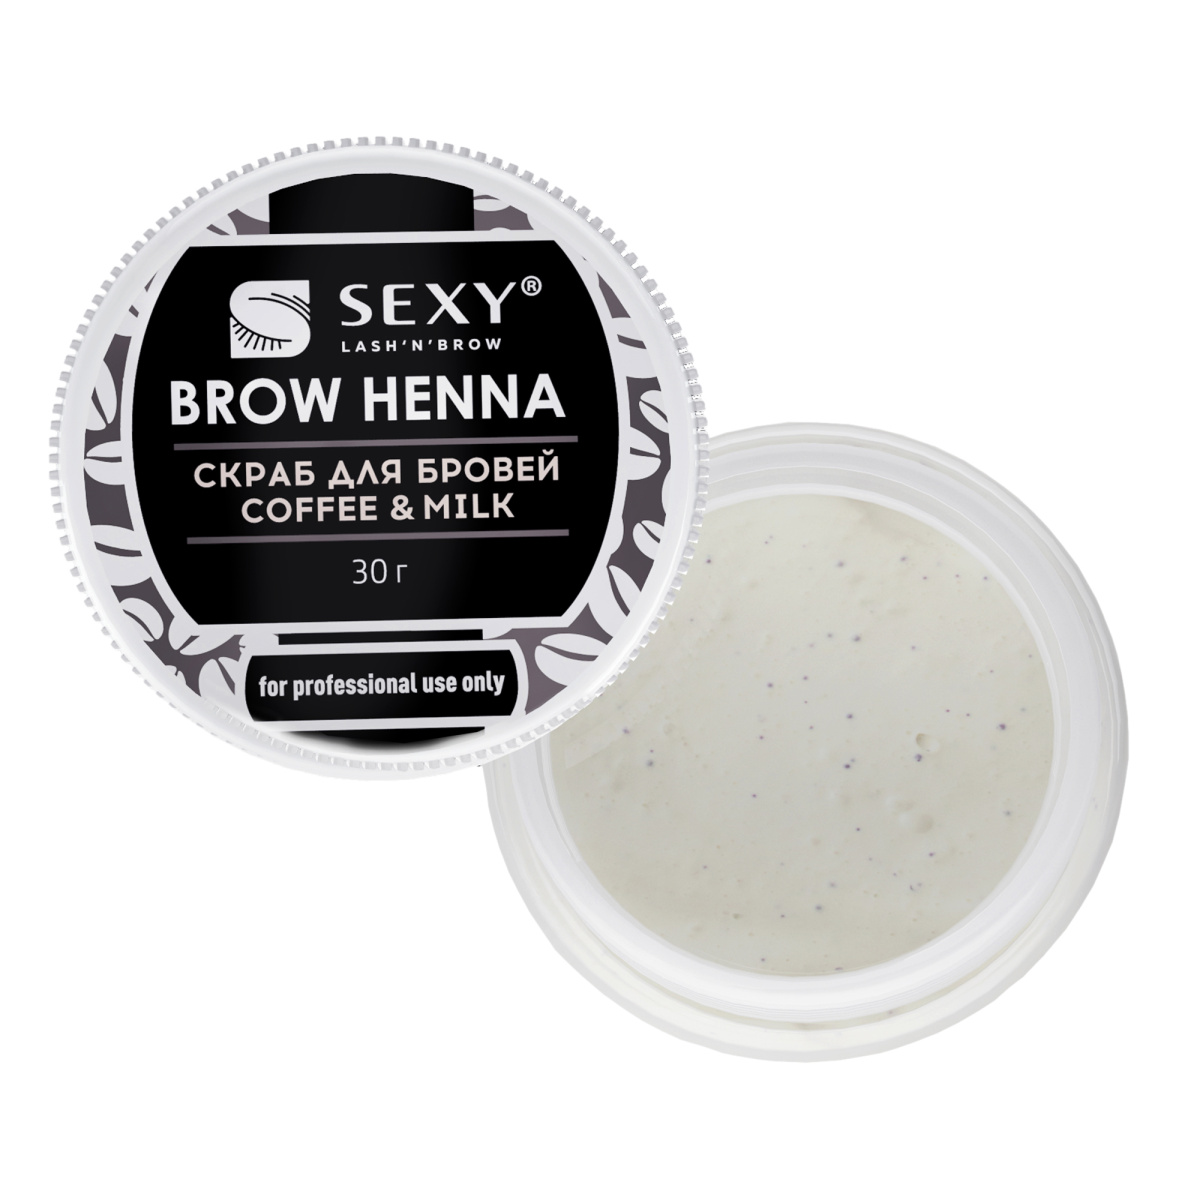 Скраб для бровей "Sexy Brow Henna", с ароматом кофе с молоком, 30г (срок до 04.24)